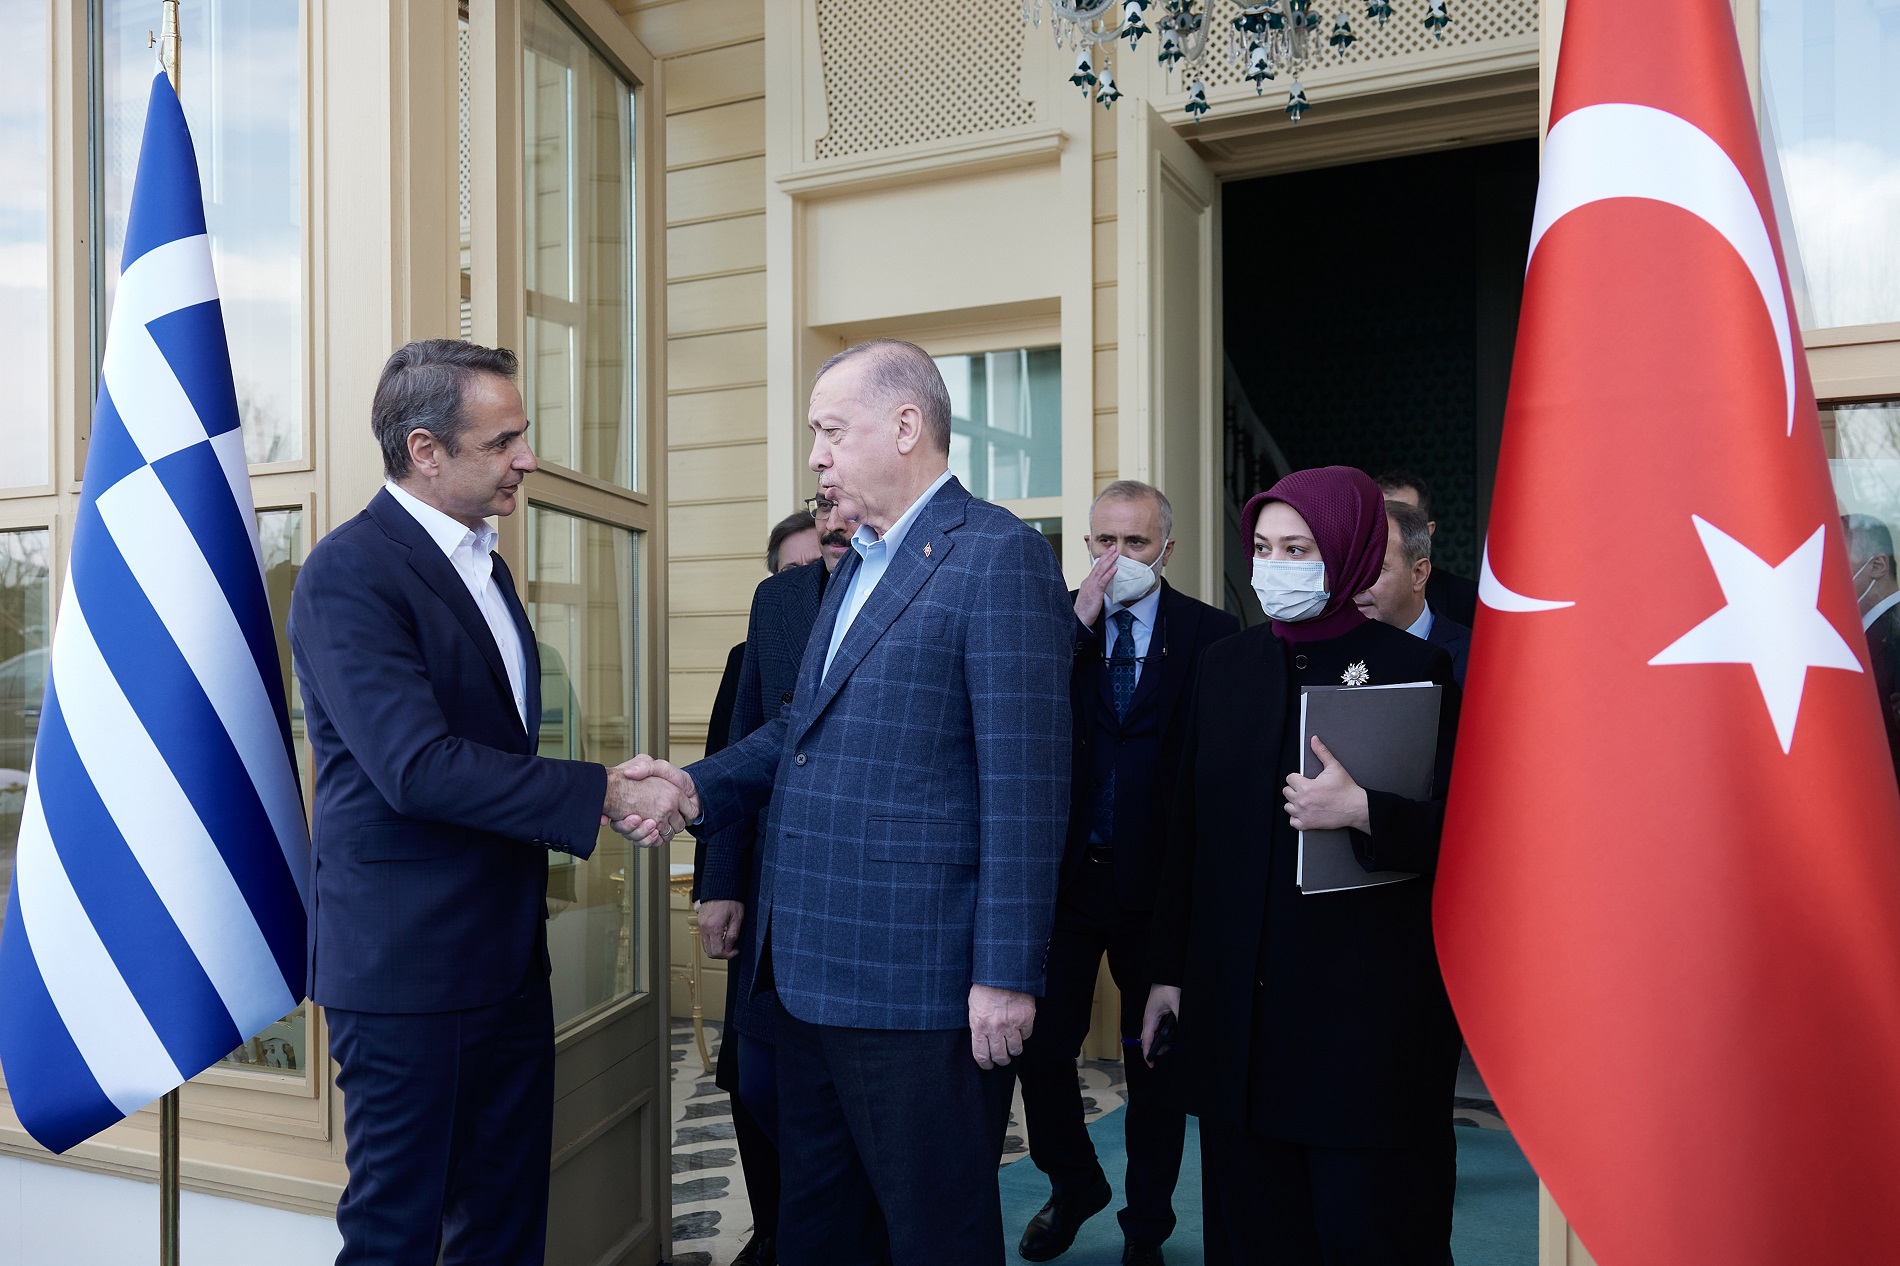 Για «νέα σελίδα στο Αιγαίο» μιλούν οι Τούρκοι μετά τη συνάντηση Κ.Μητσοτάκη-Ερντογάν – Έρχονται να τρυπήσουν;